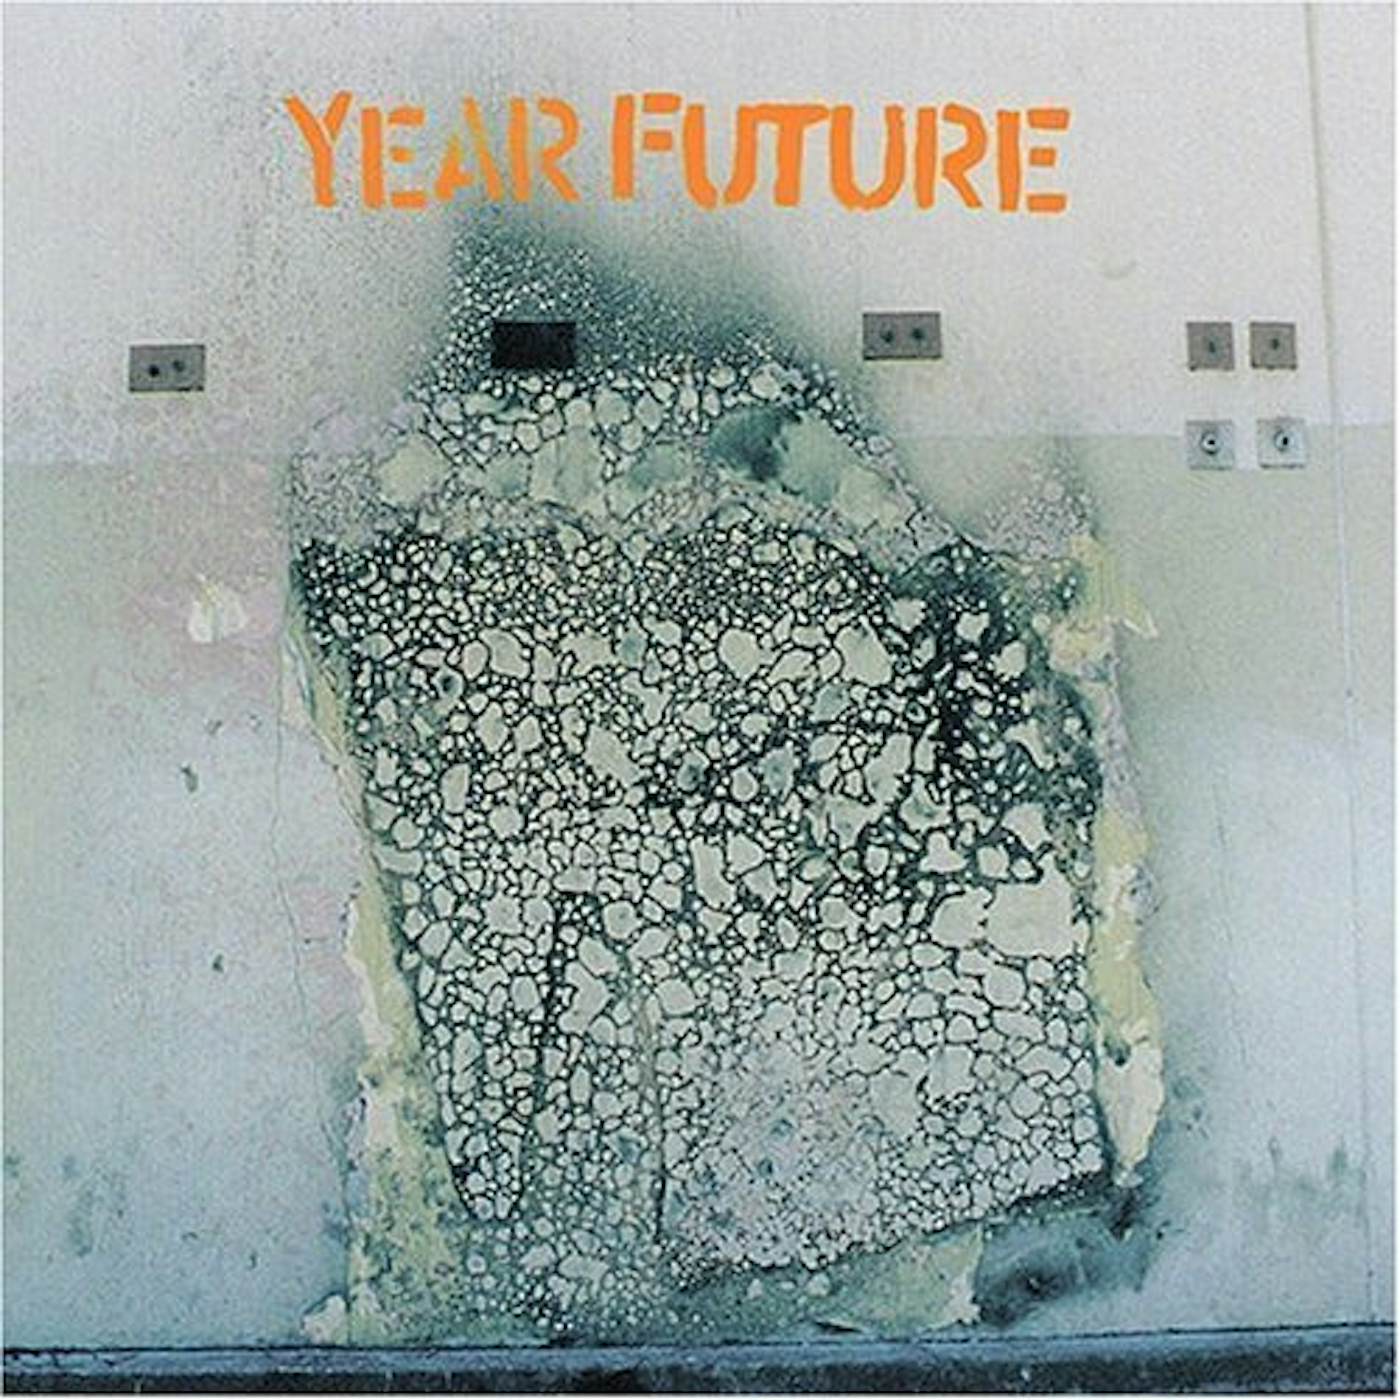 YEAR FUTURE CD